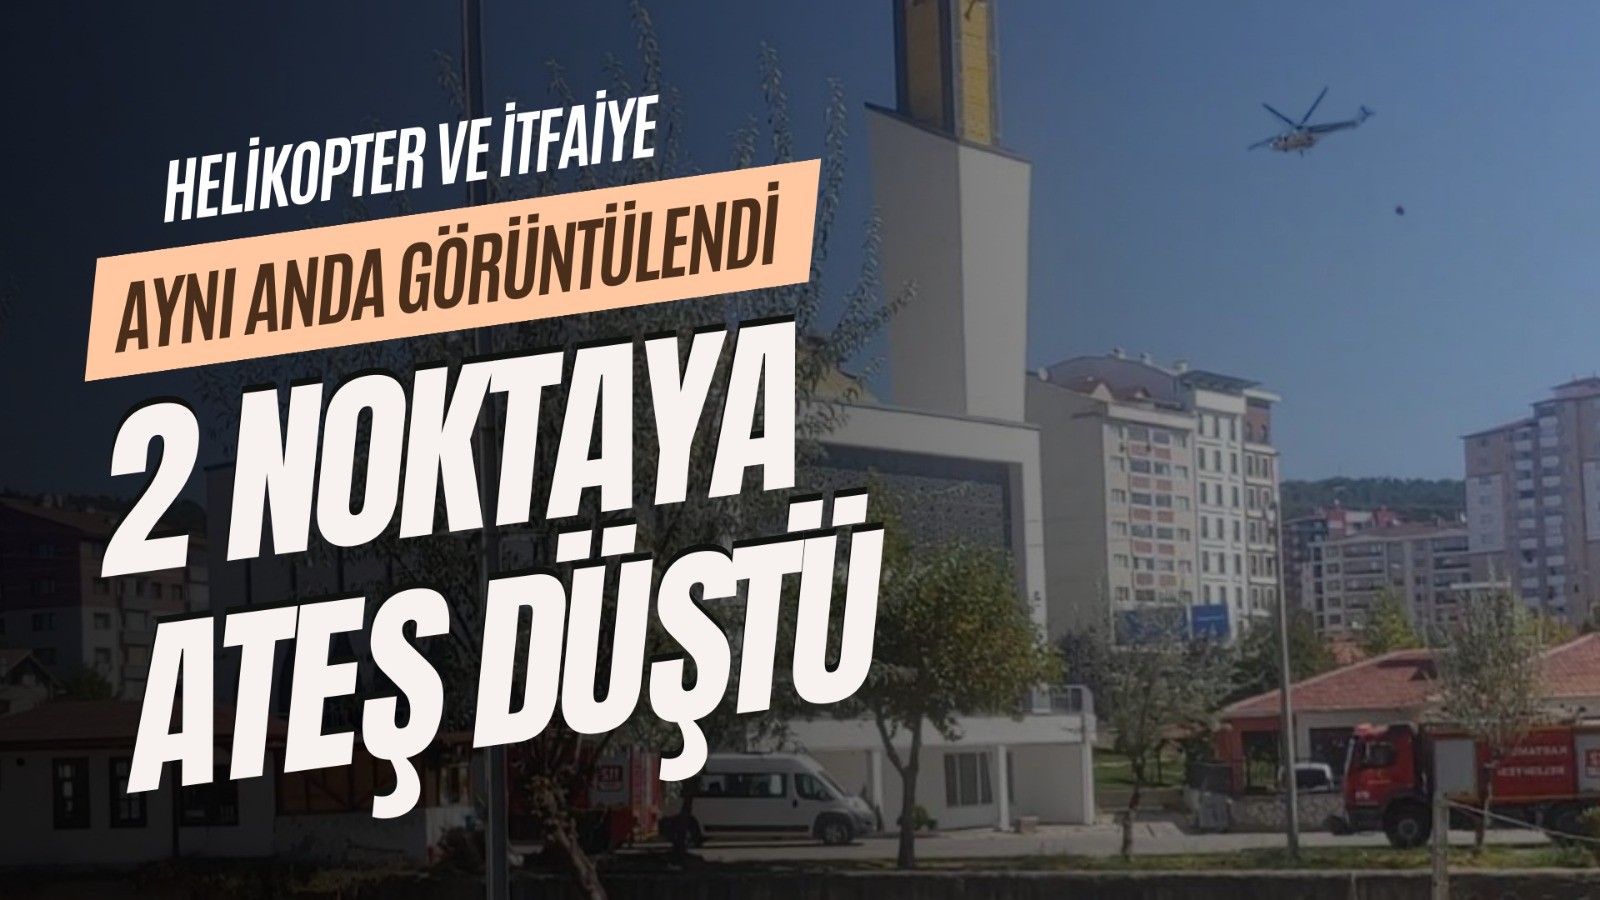 Kastamonu'da 2 noktaya ateş düştü: Helikopter Araç'a, İtfaiye'ler Kızılkese'ye